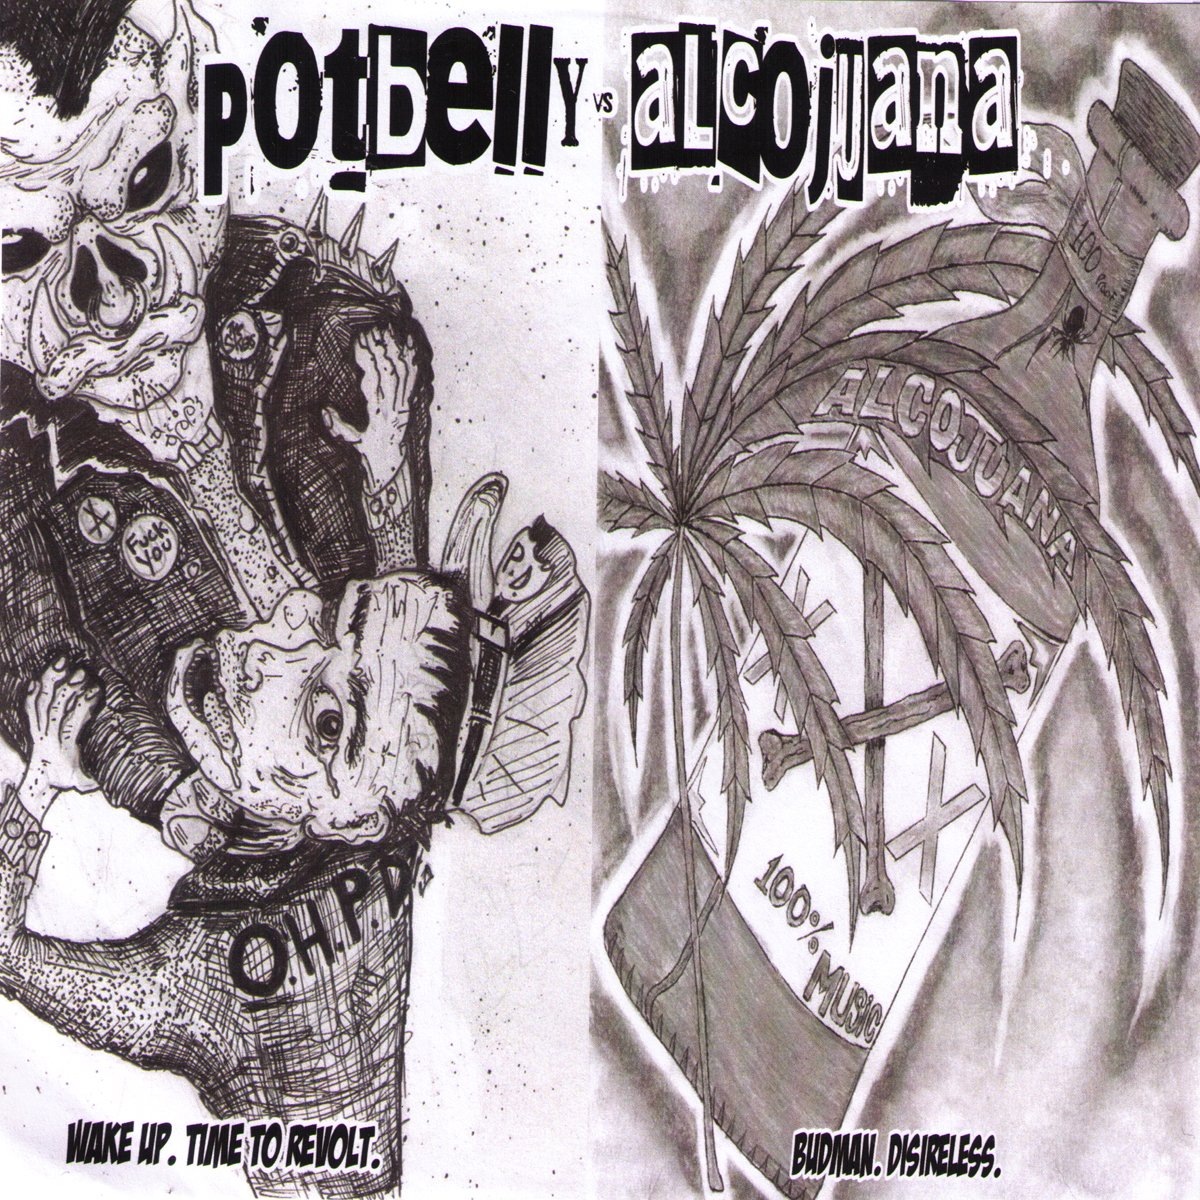 Potbelly / Alcojuana- Split 7”